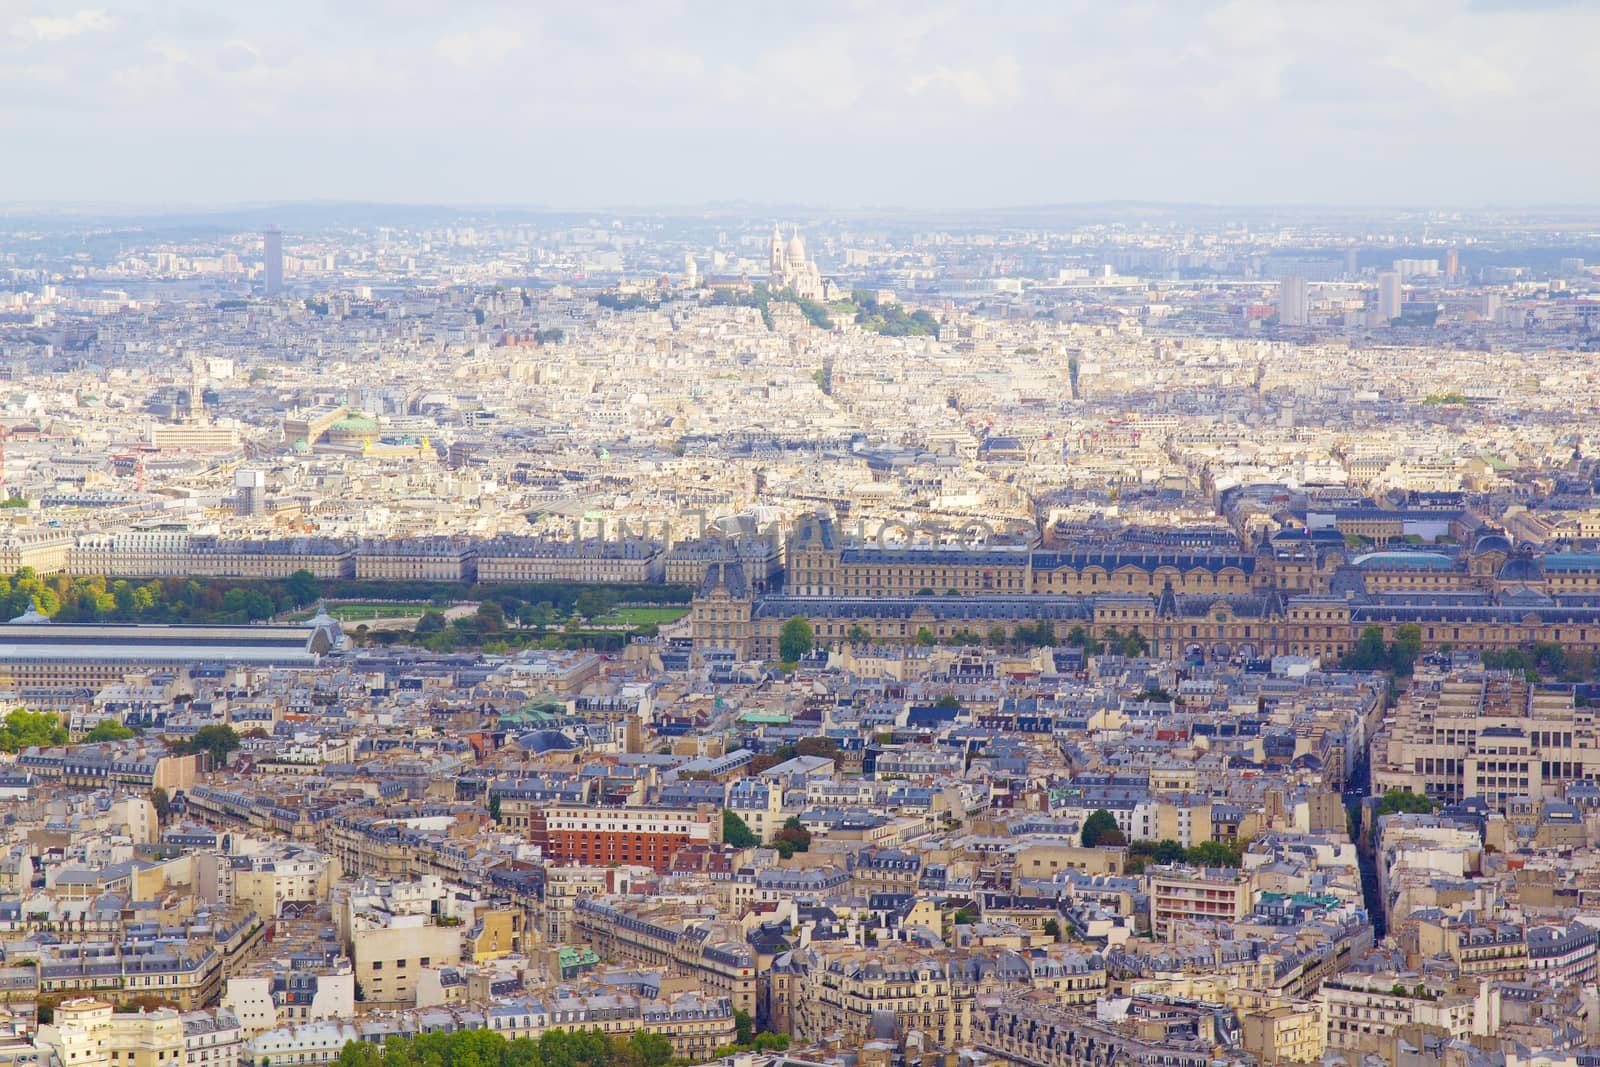 Parisian cityscape by Dermot68